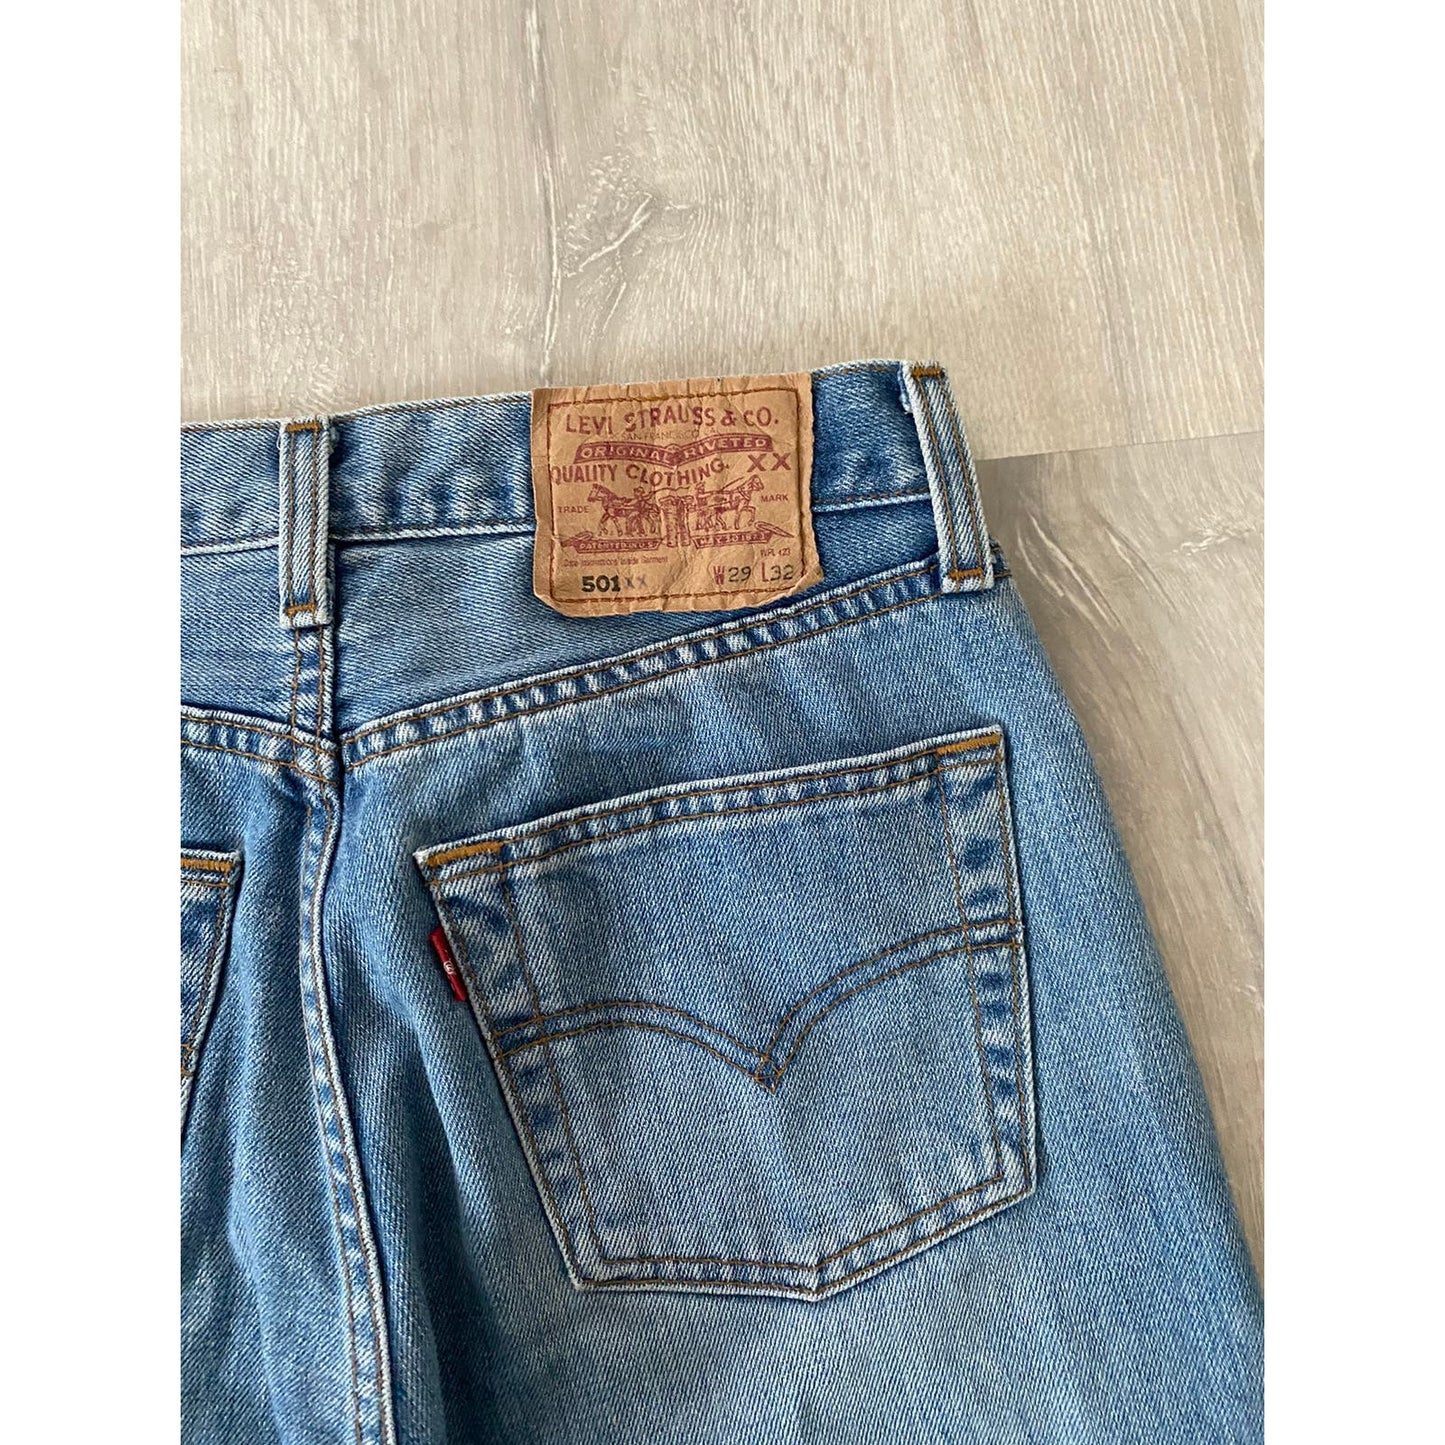 90s Levi’s 501 vintage baby blue jeans denim pants